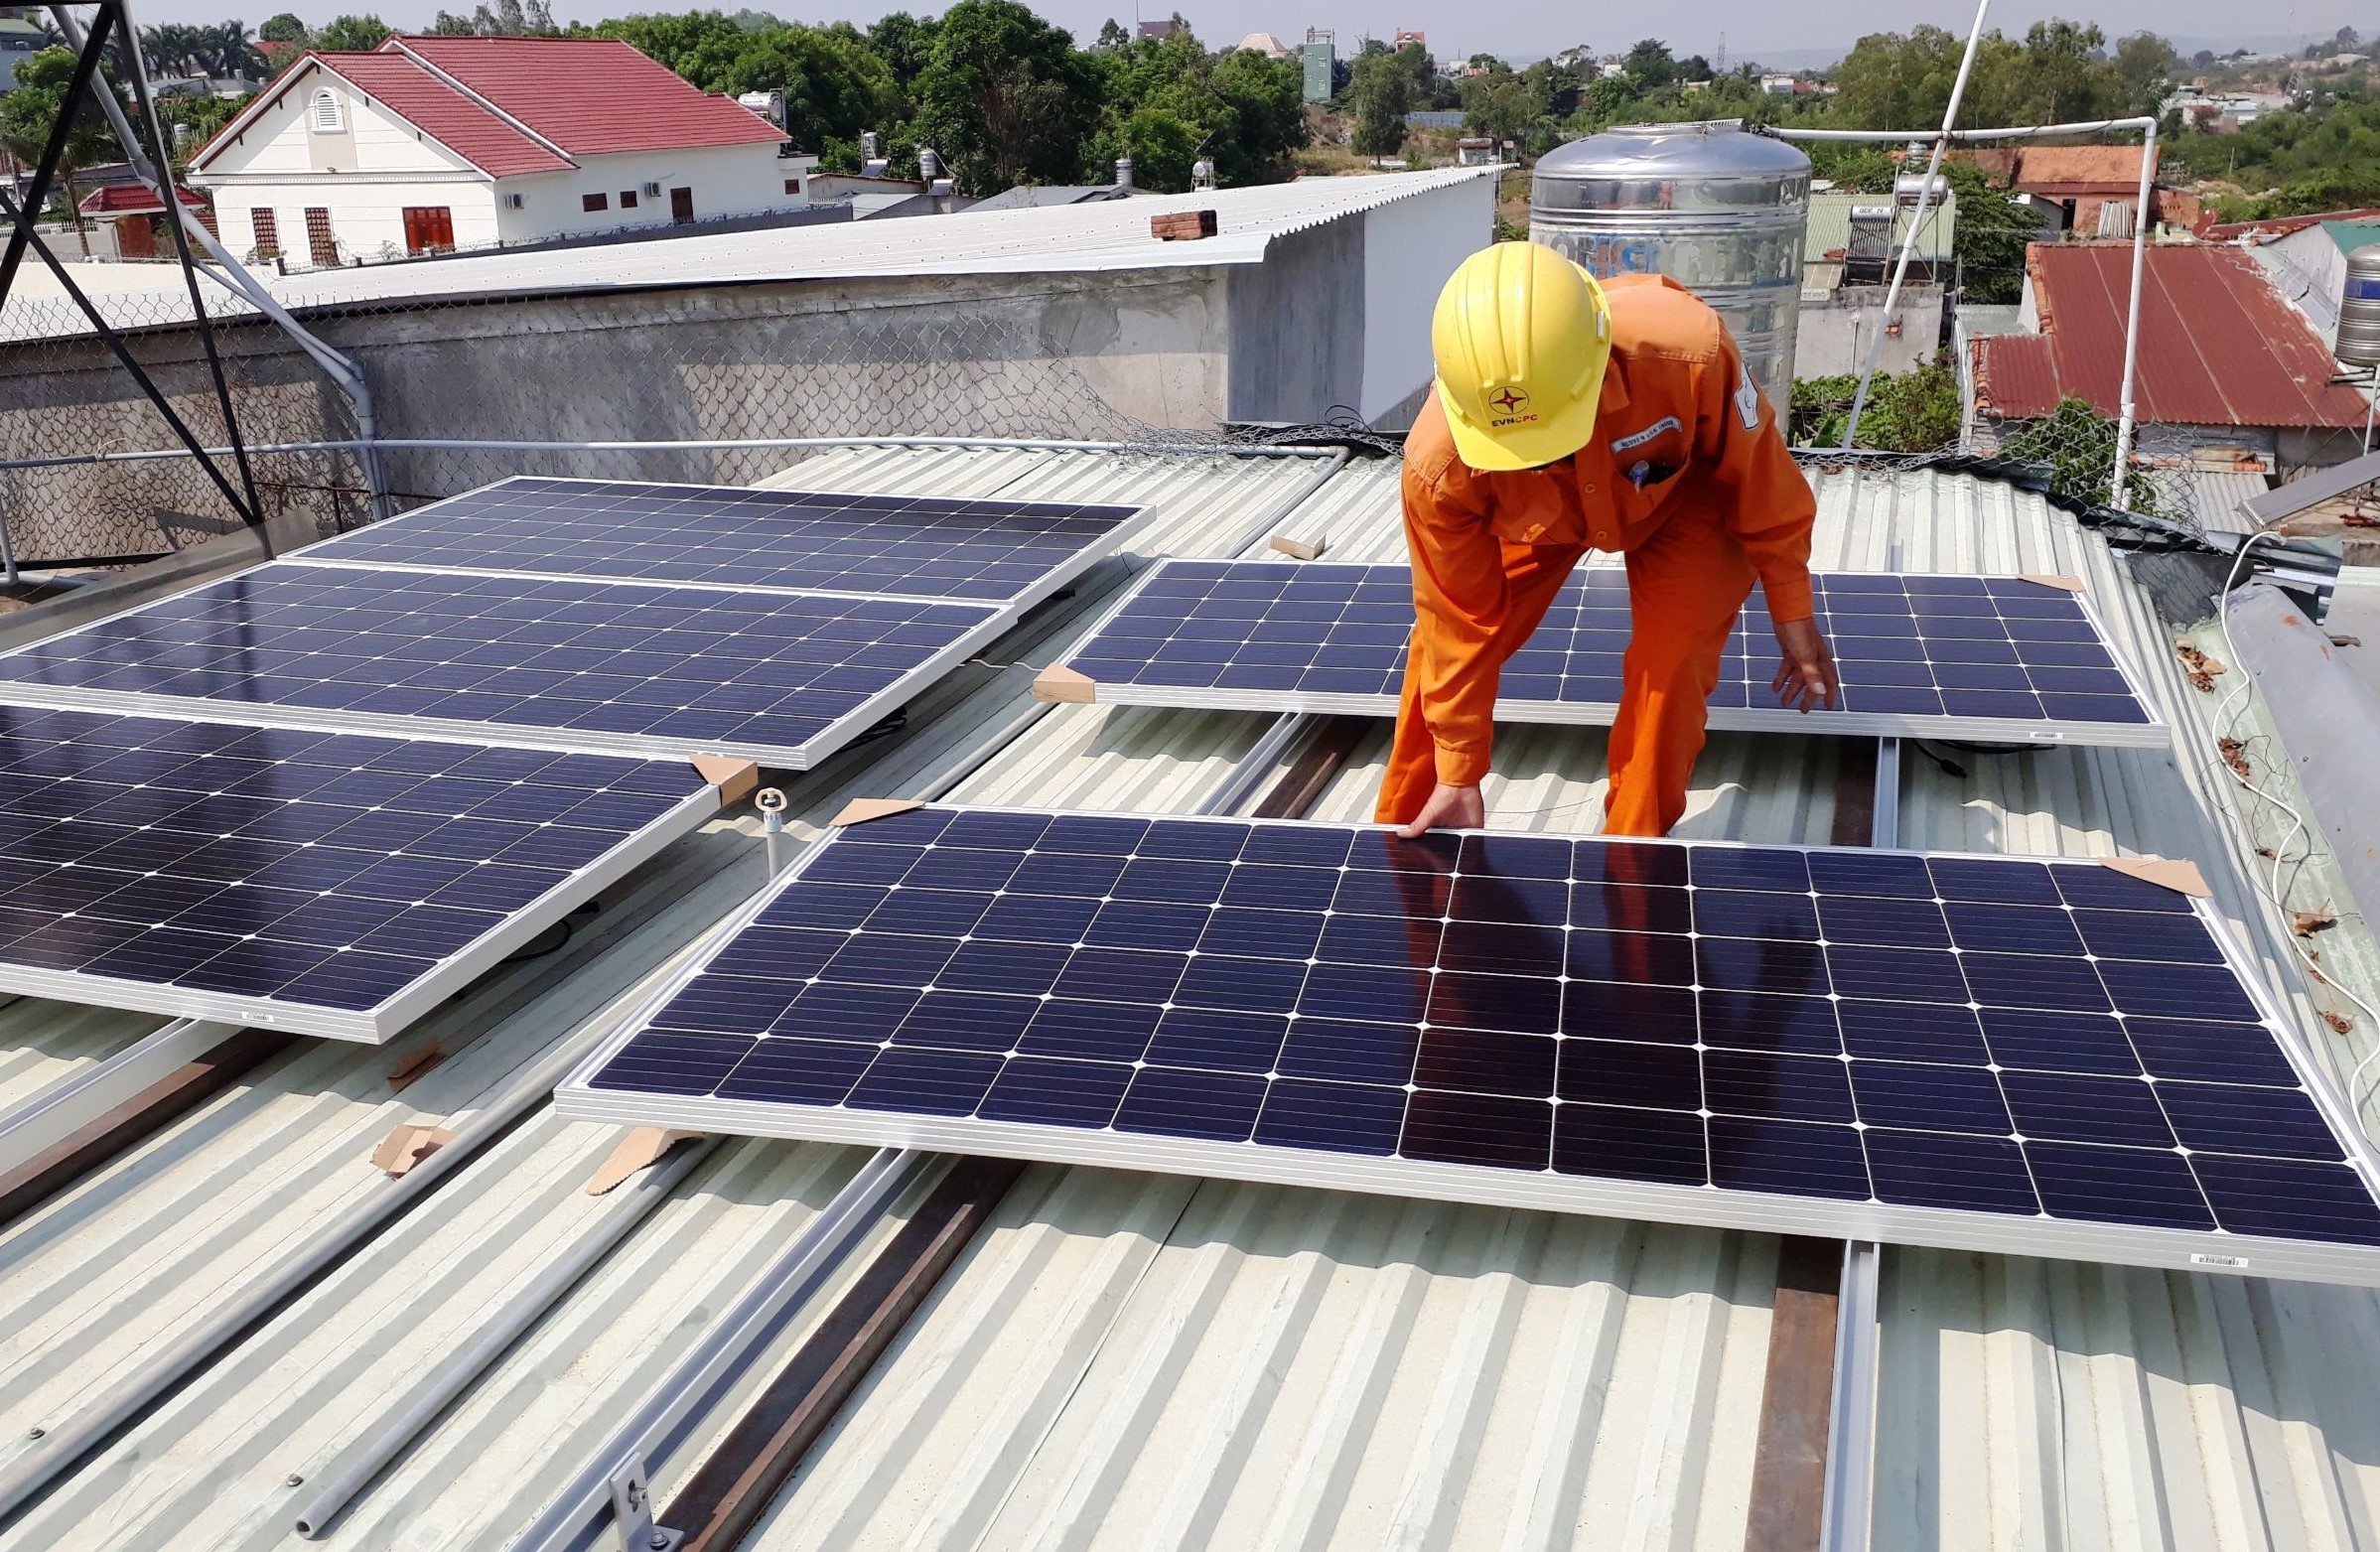 quy định việc phát triển điện mặt trời mái nhà lắp đặt tại nhà ở, cơ quan công sở tại Việt Nam để tự sử dụng, không bán điện cho tổ chức, cá nhân khác